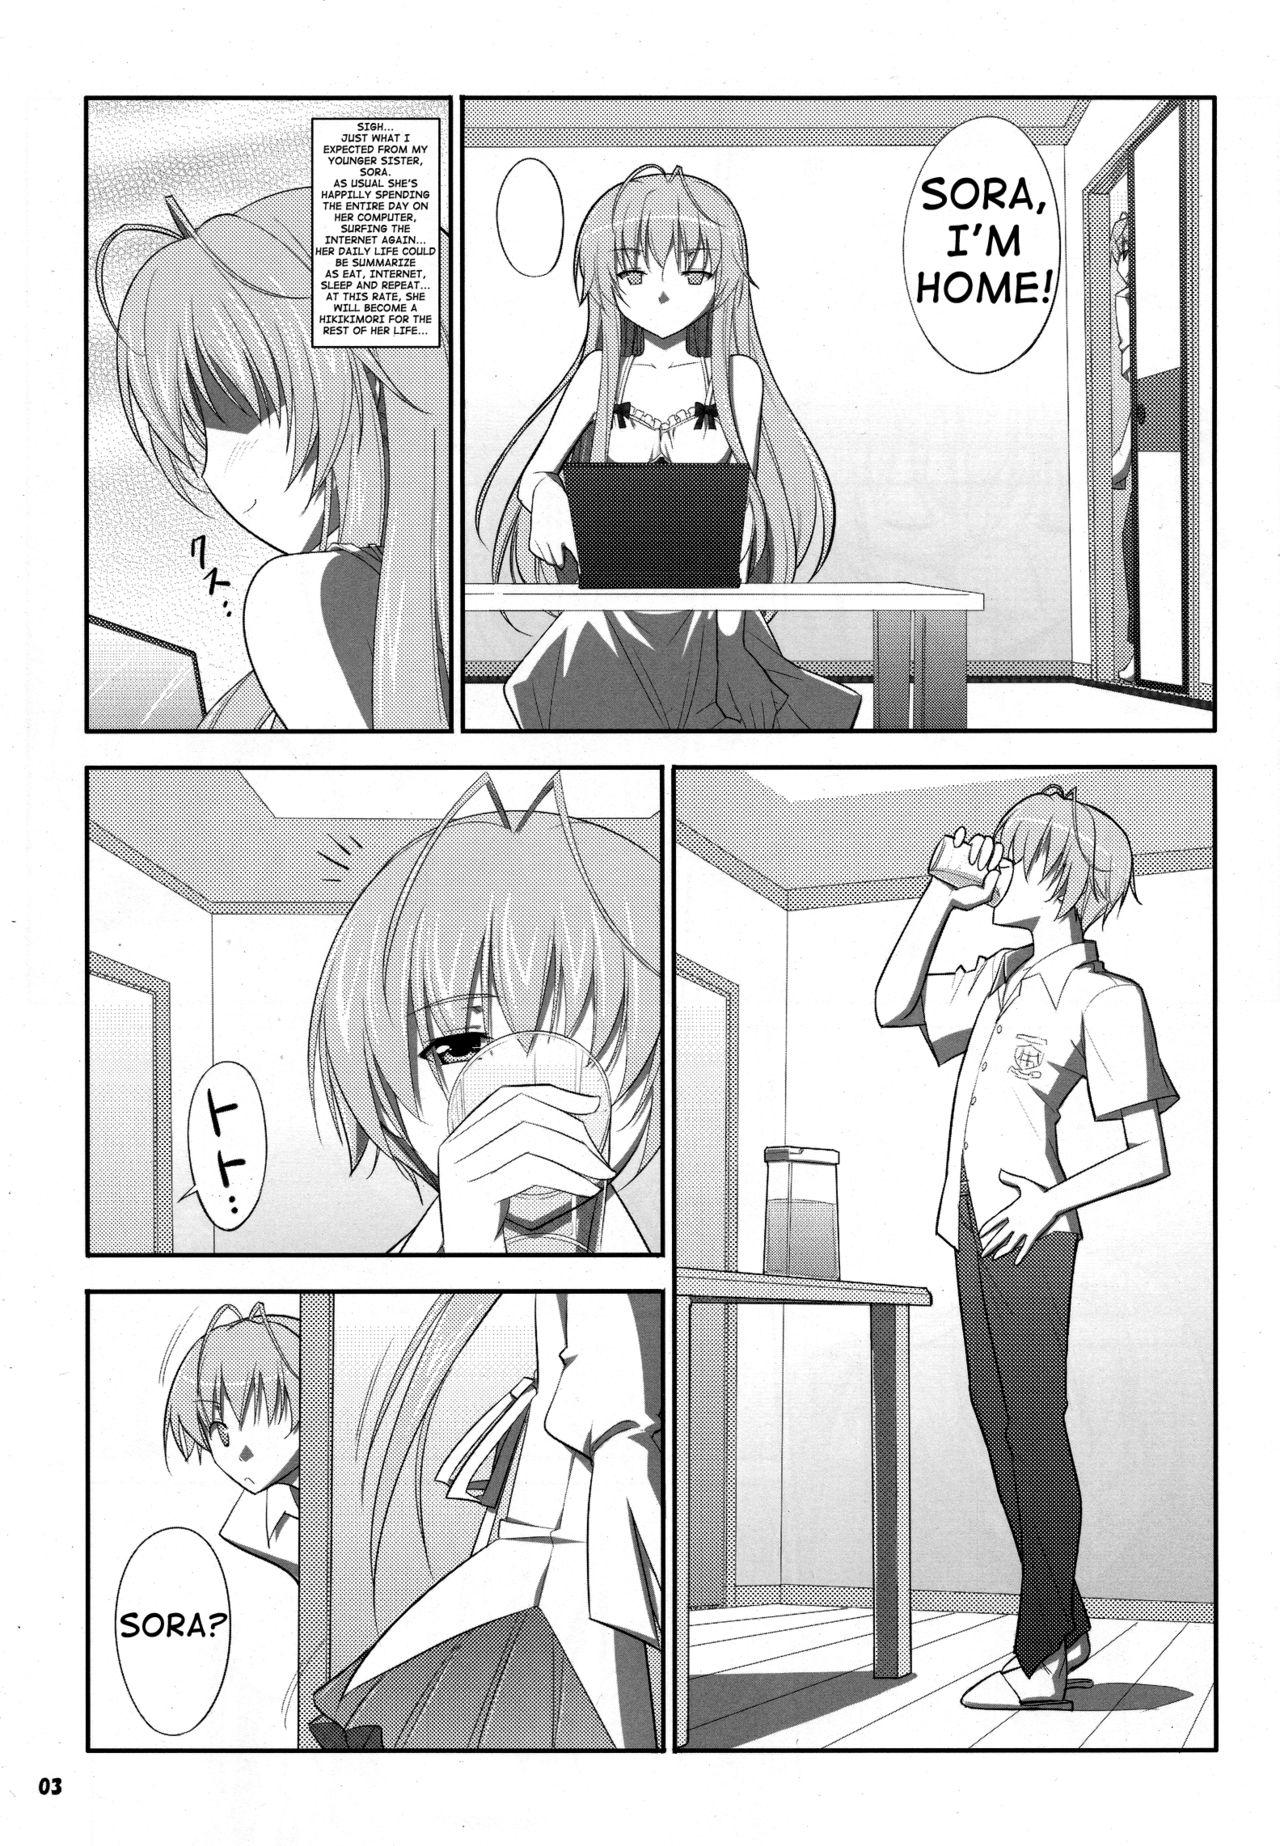 3some HN:SORA - Yosuga no sora Sesso - Page 3